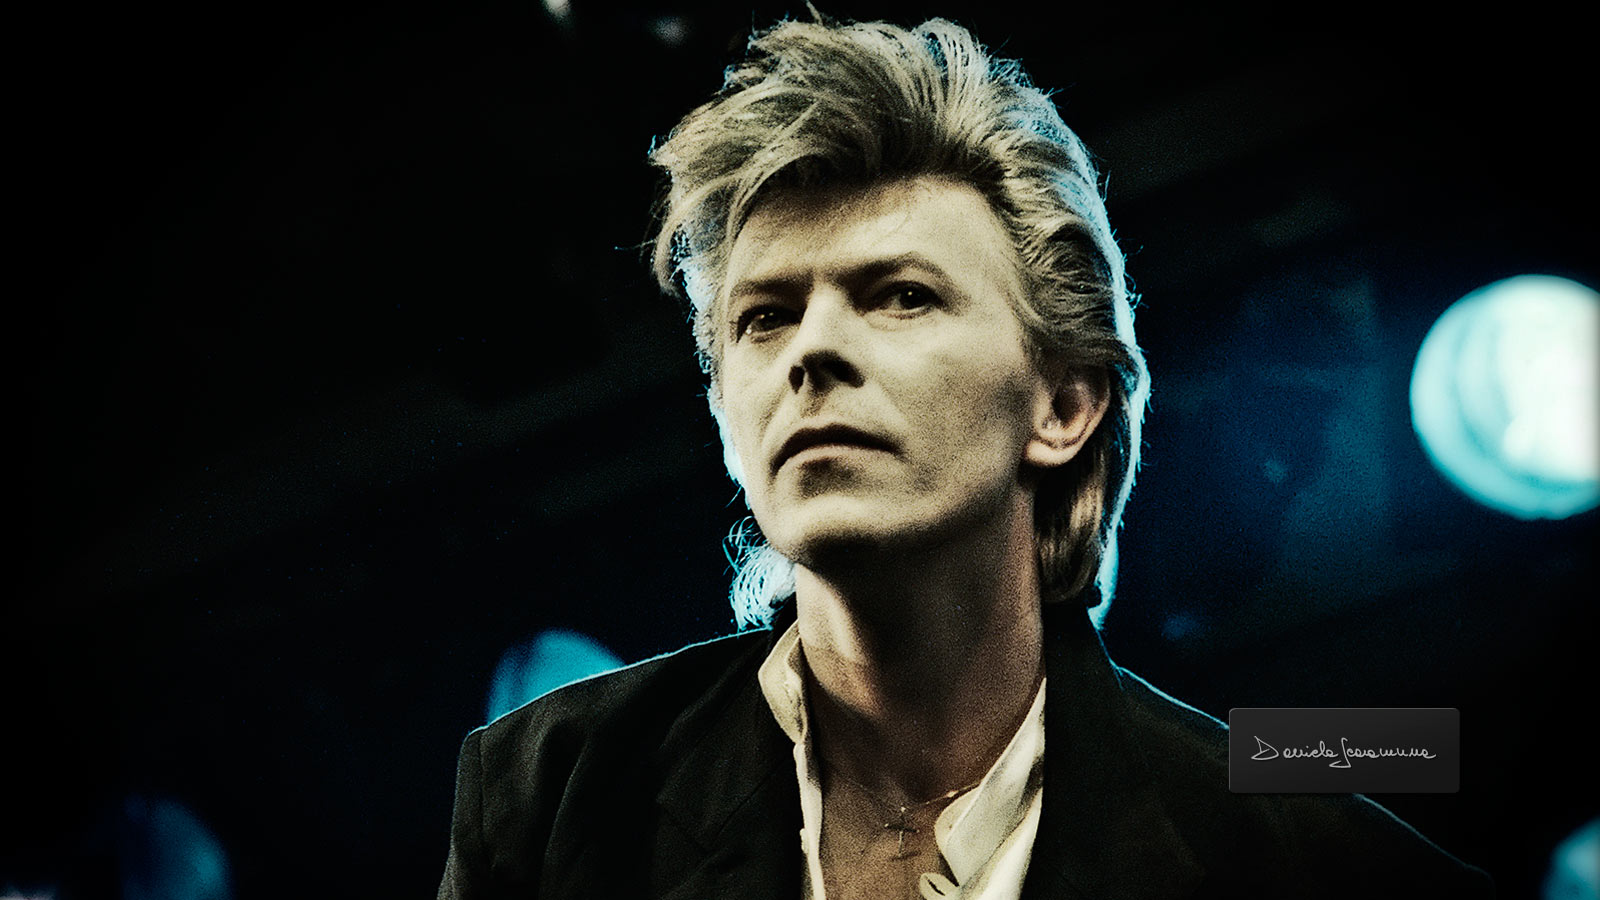 David Bowie Wallpaper My Hub